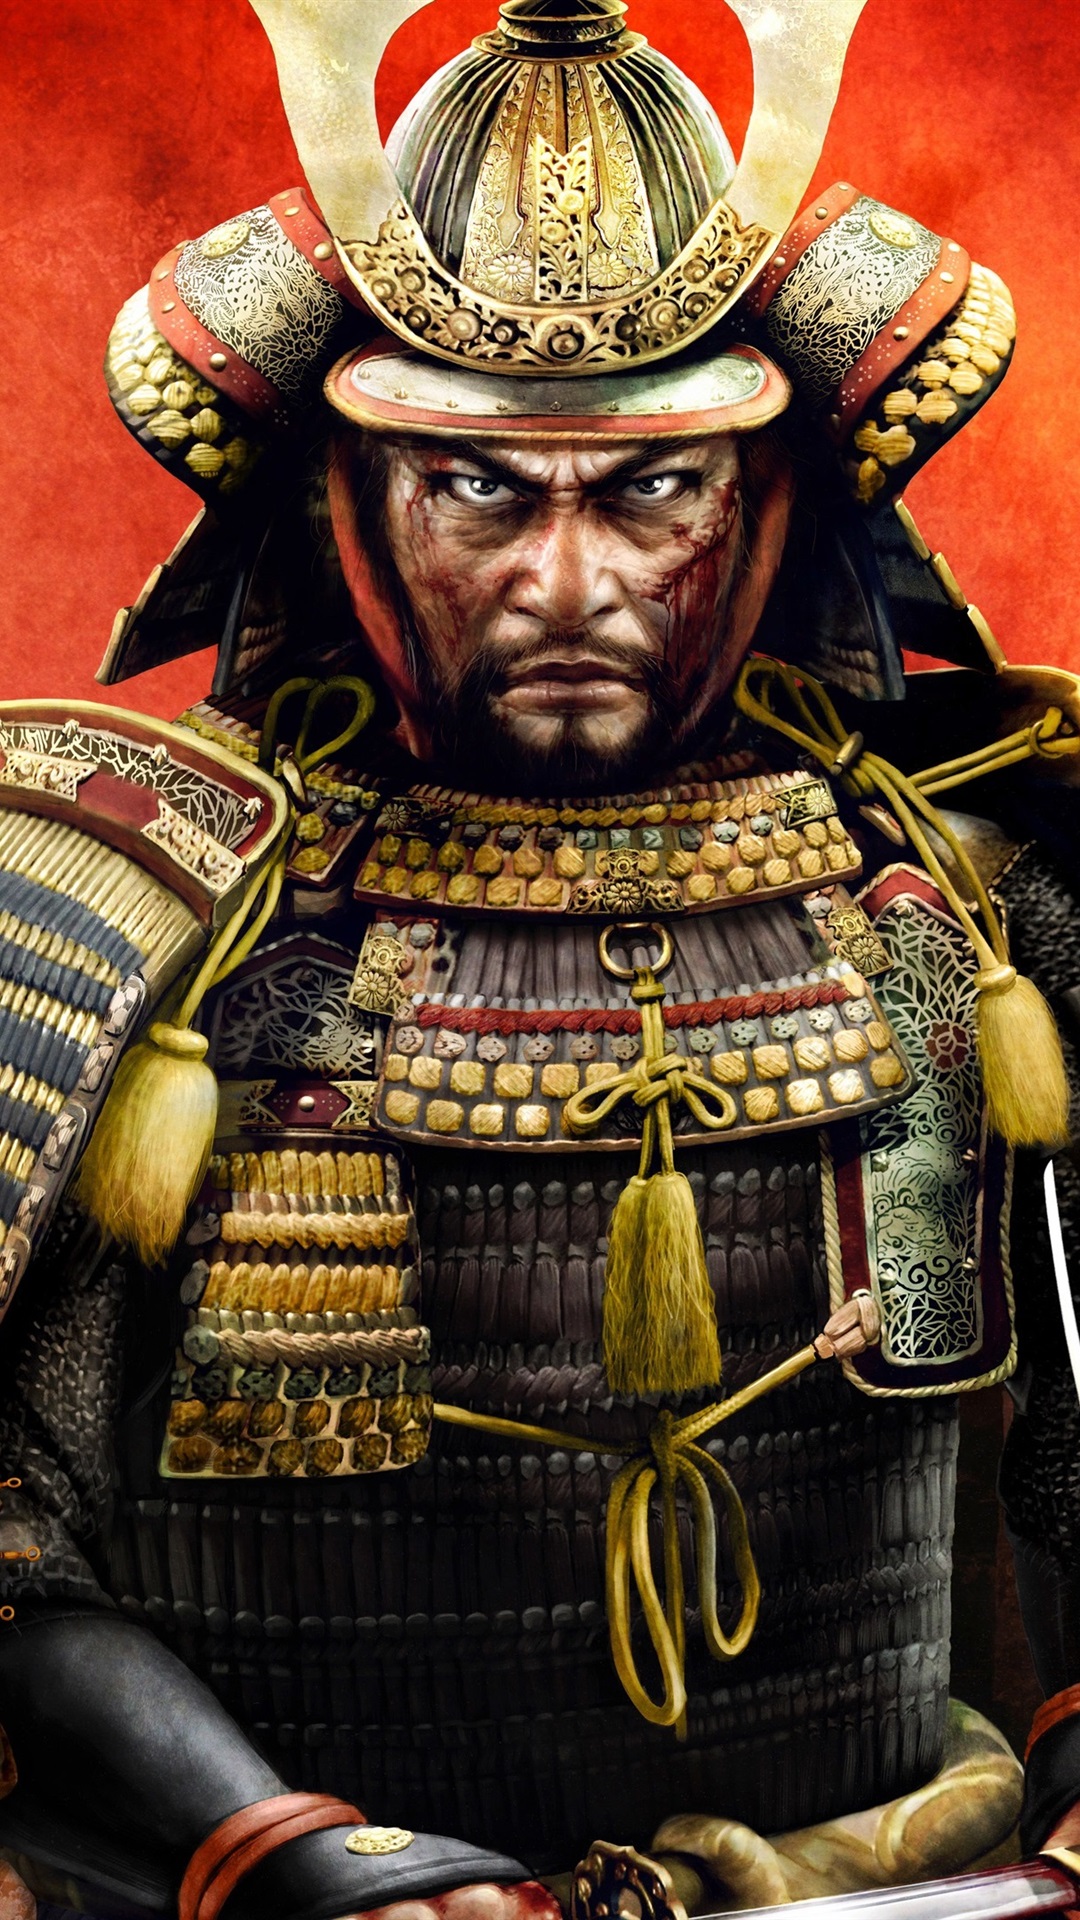 Iphone Wallpaper Total War - Shogun Total War 2 - 1080x1920 Wallpaper